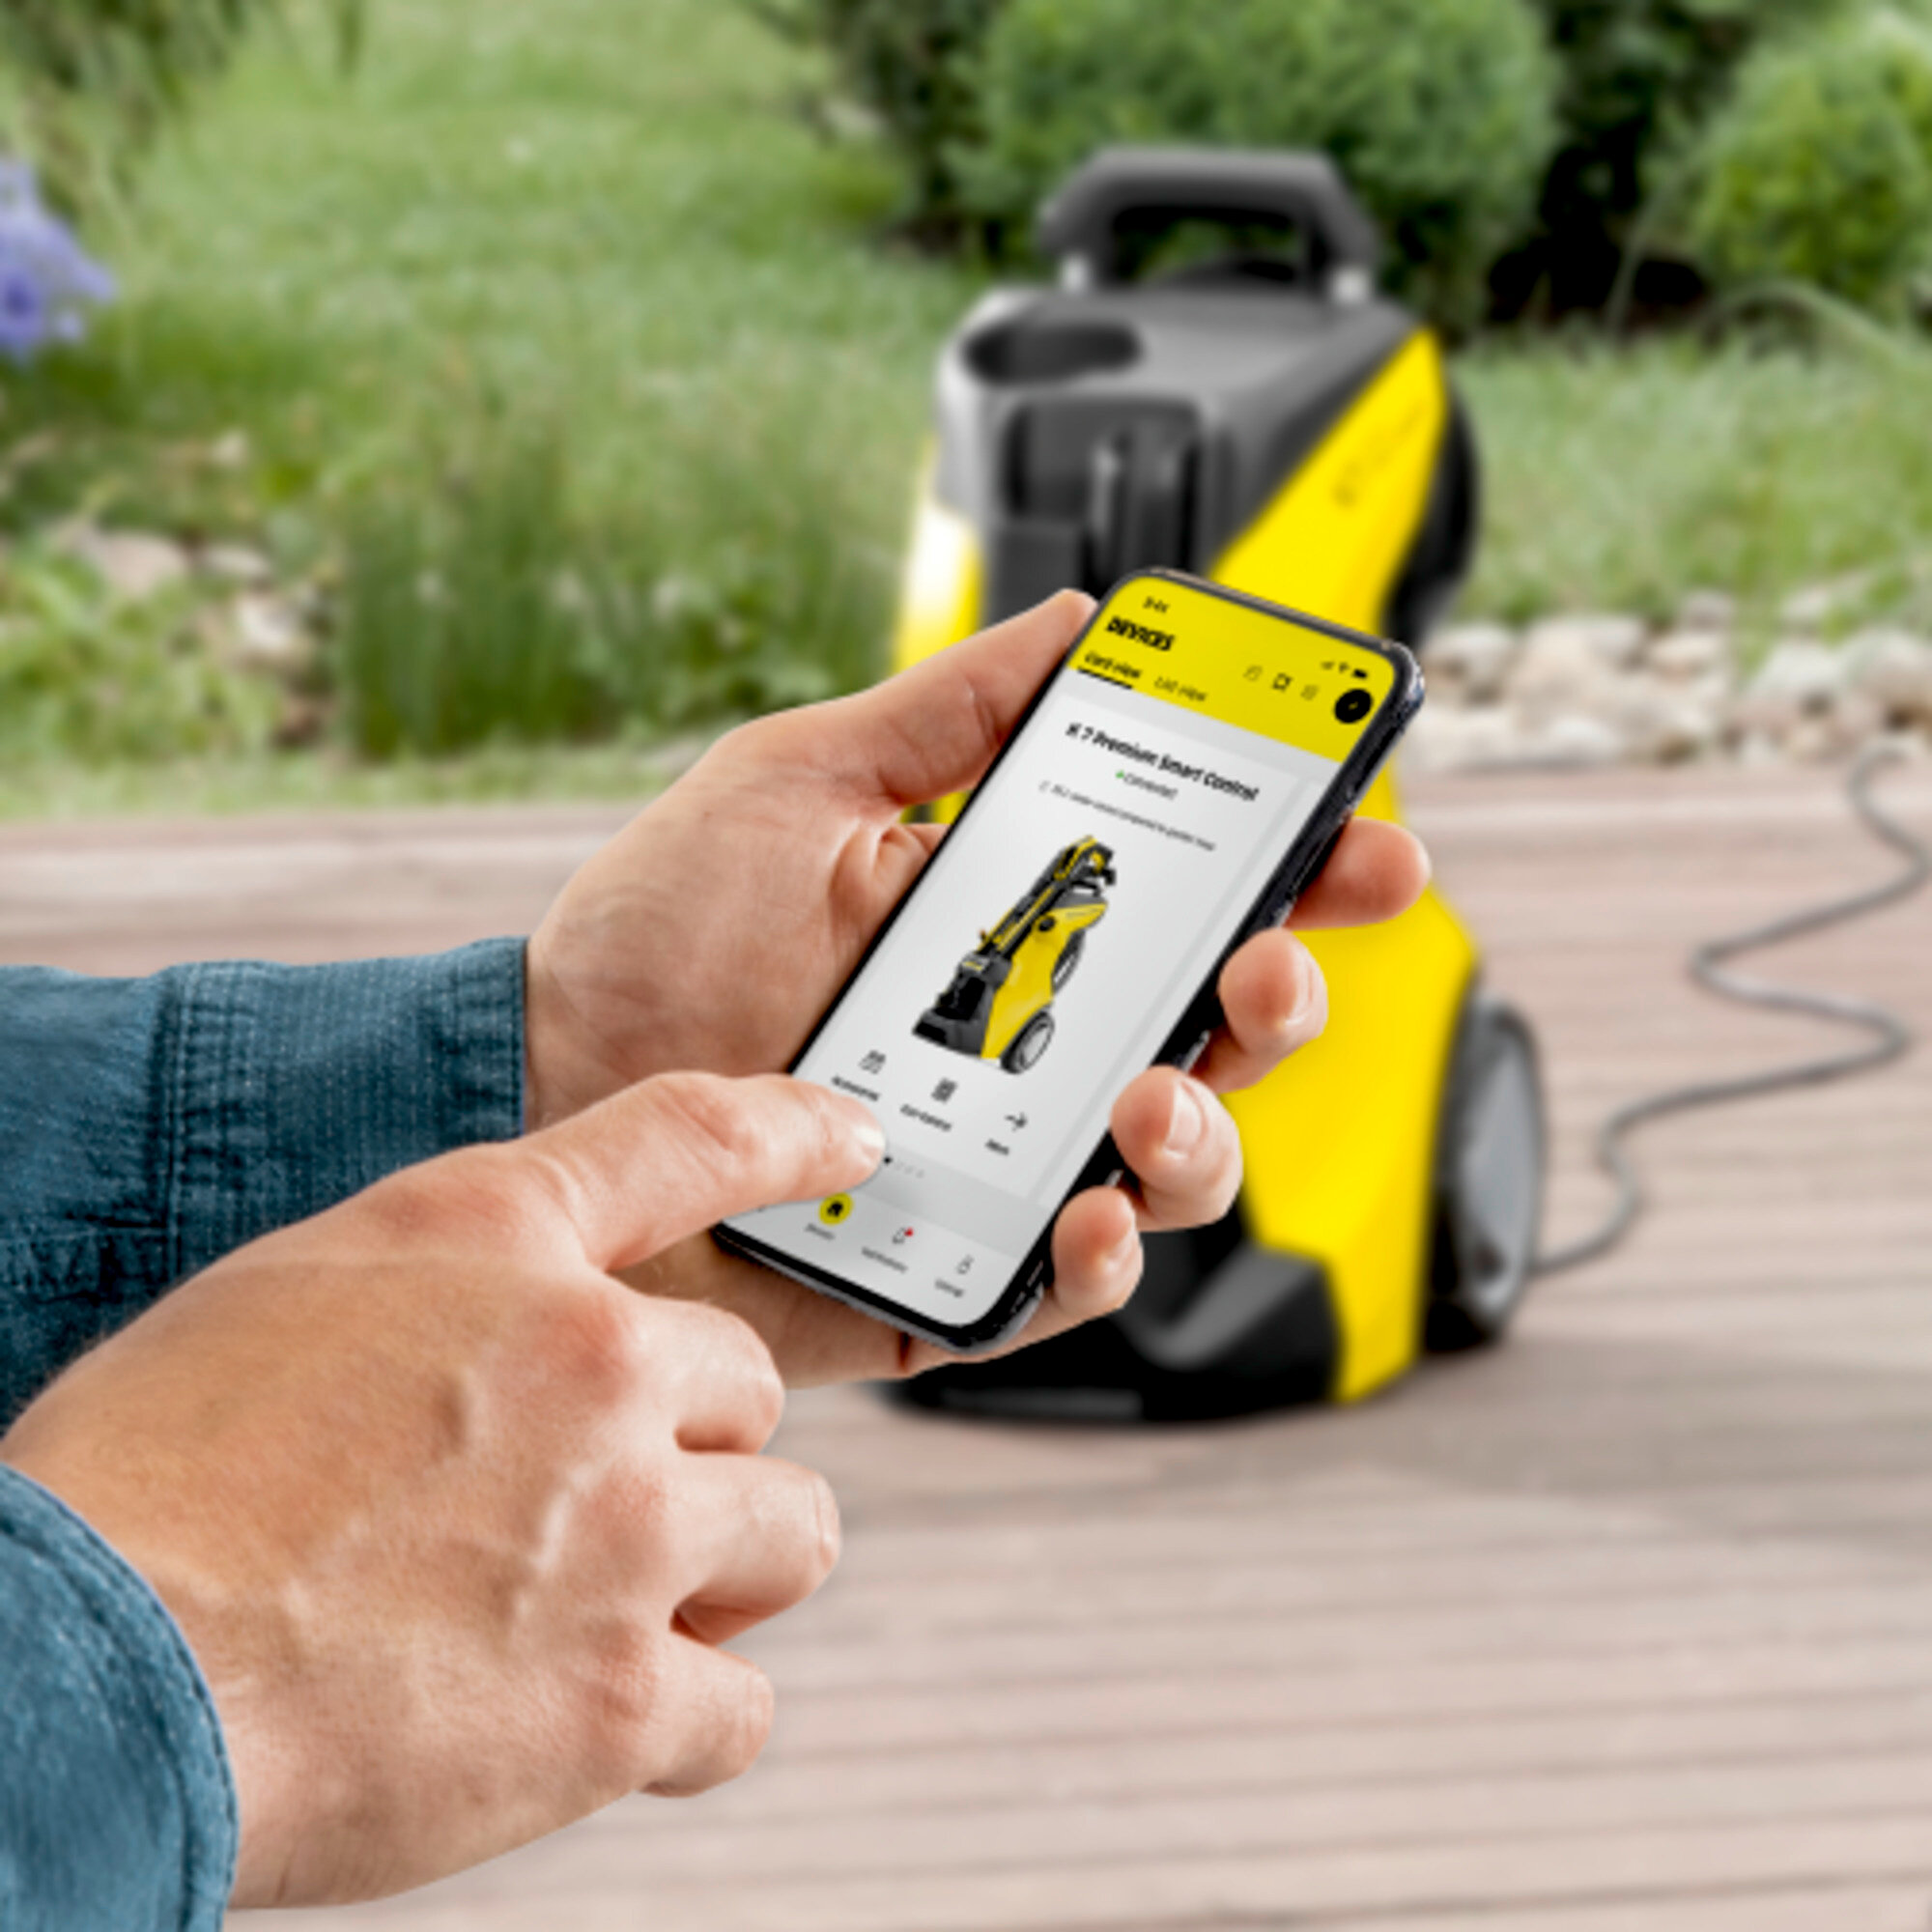 Idropulitrice Idropulitrice K 7 Smart Control: Connessione Bluetooth per l'applicazione Home & Garden